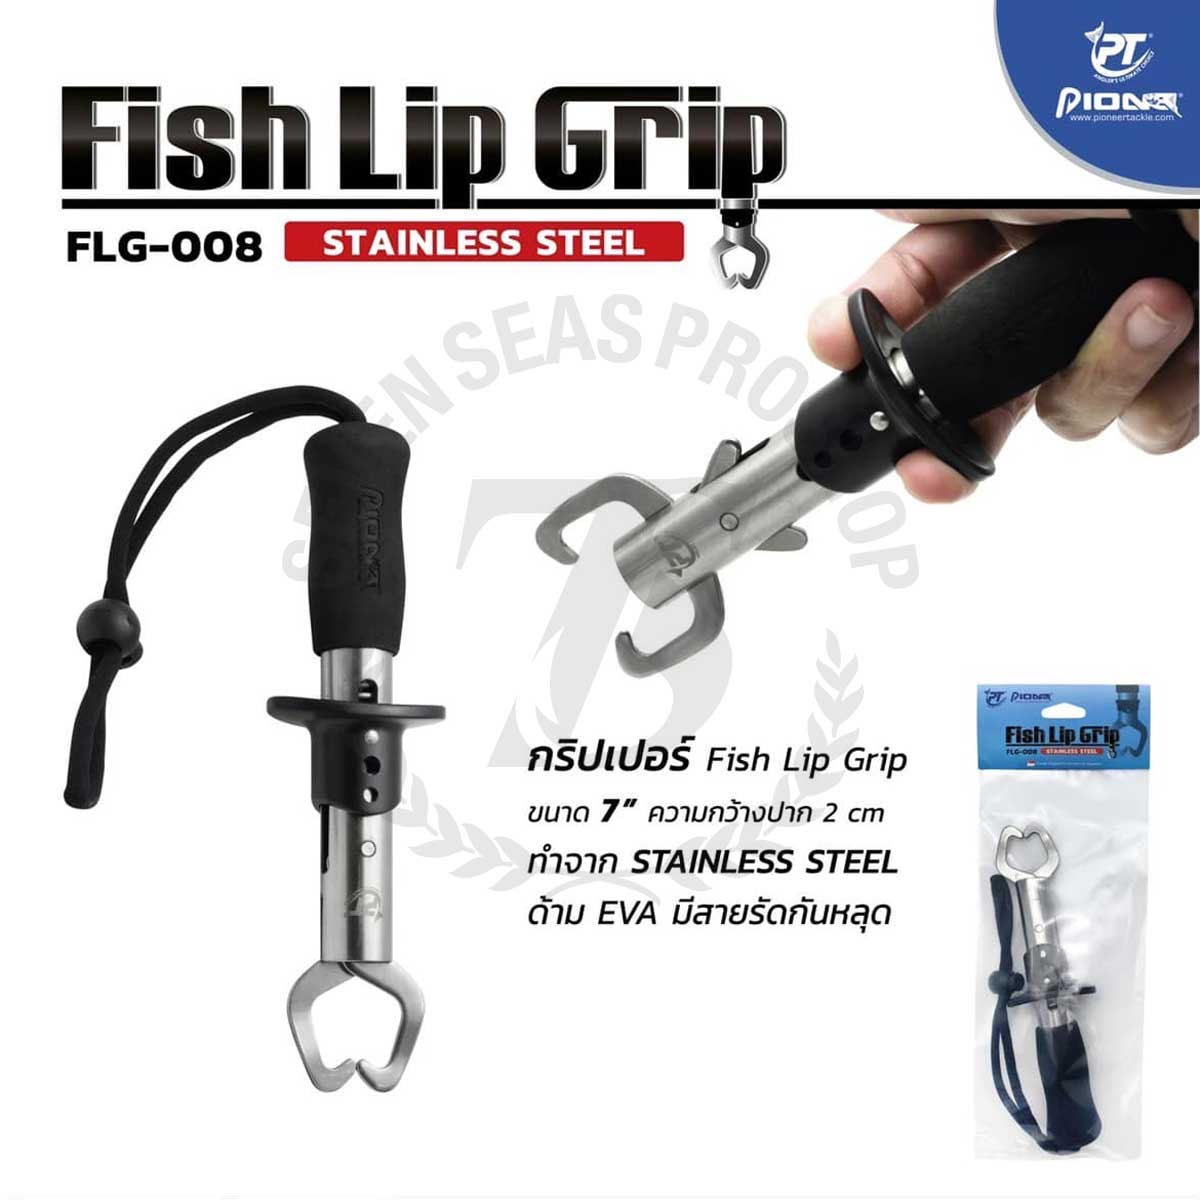 Pioneer Fish Lip Grip FLG-008 Stainless Steel*กริปเปอร์คิปปลา - 7